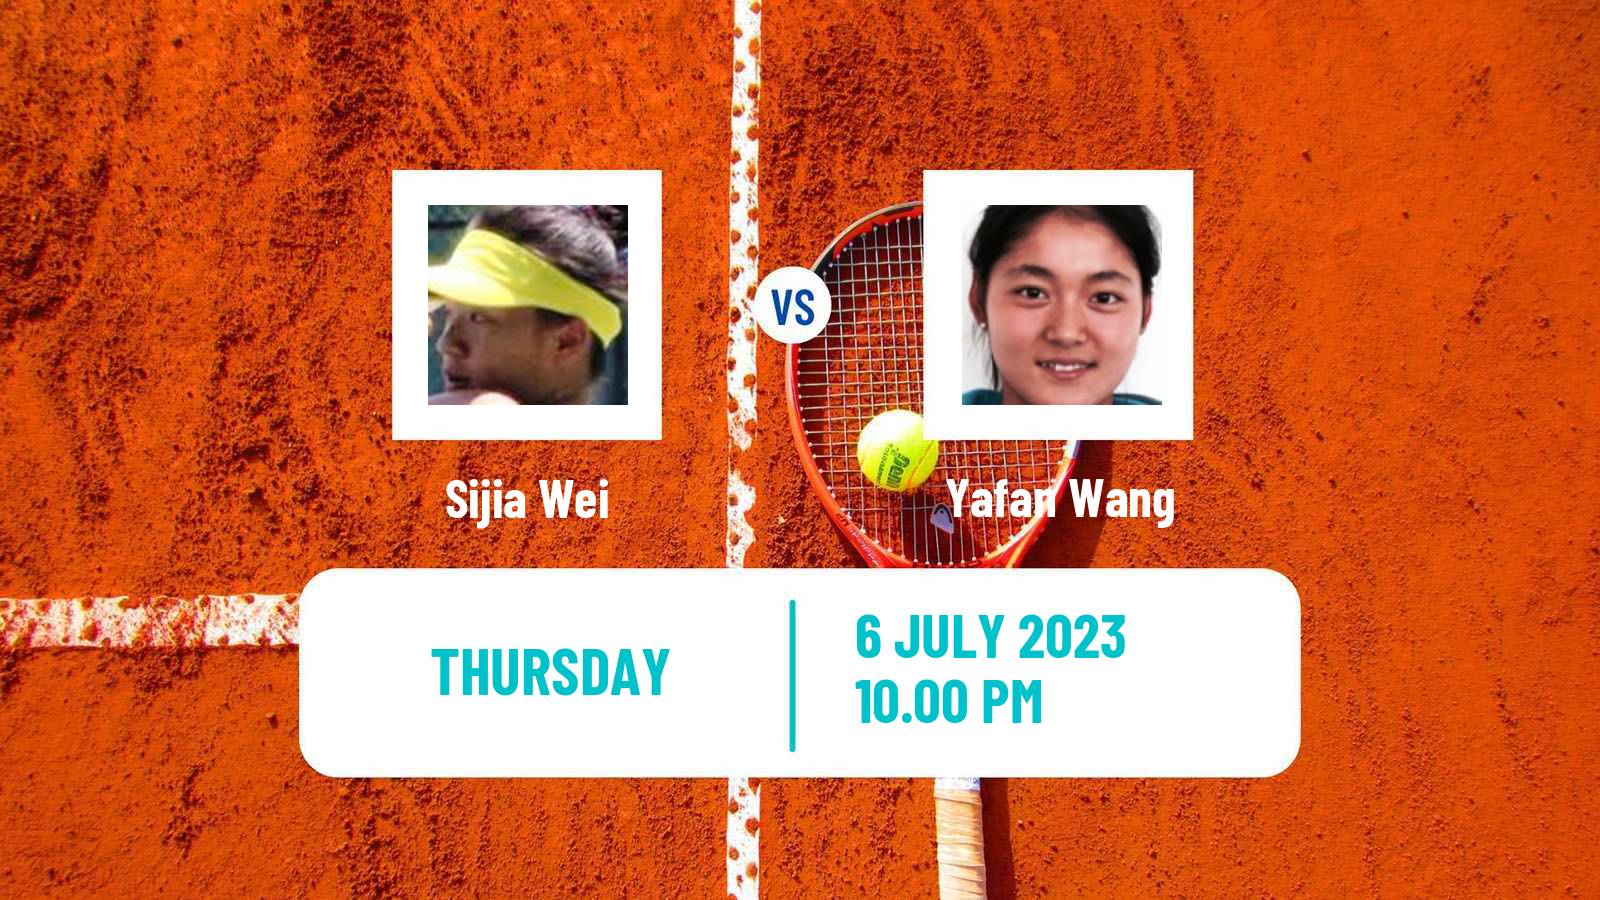 Tennis ITF W40 Hong Kong Women Sijia Wei - Yafan Wang